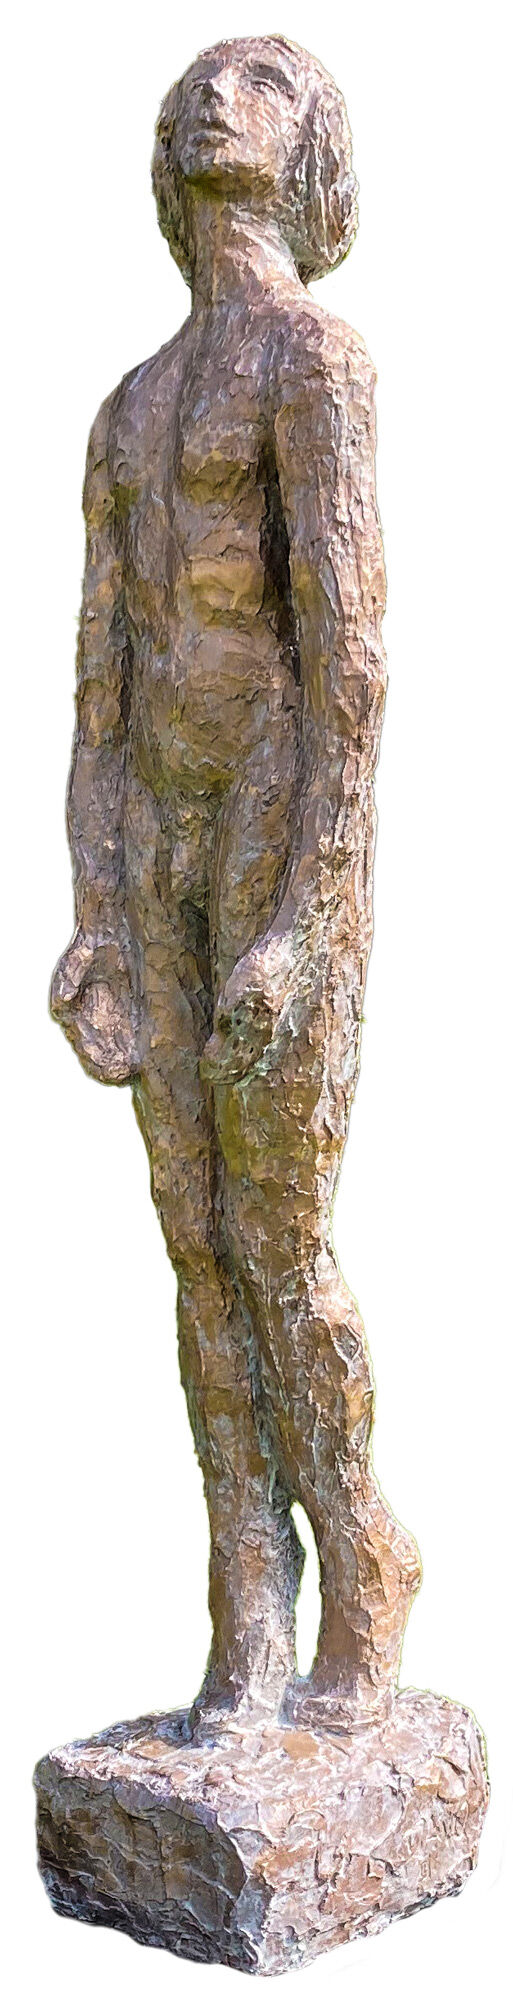 Sculpture "Pina - Full Moon" (2019), bronze by Dagmar Vogt